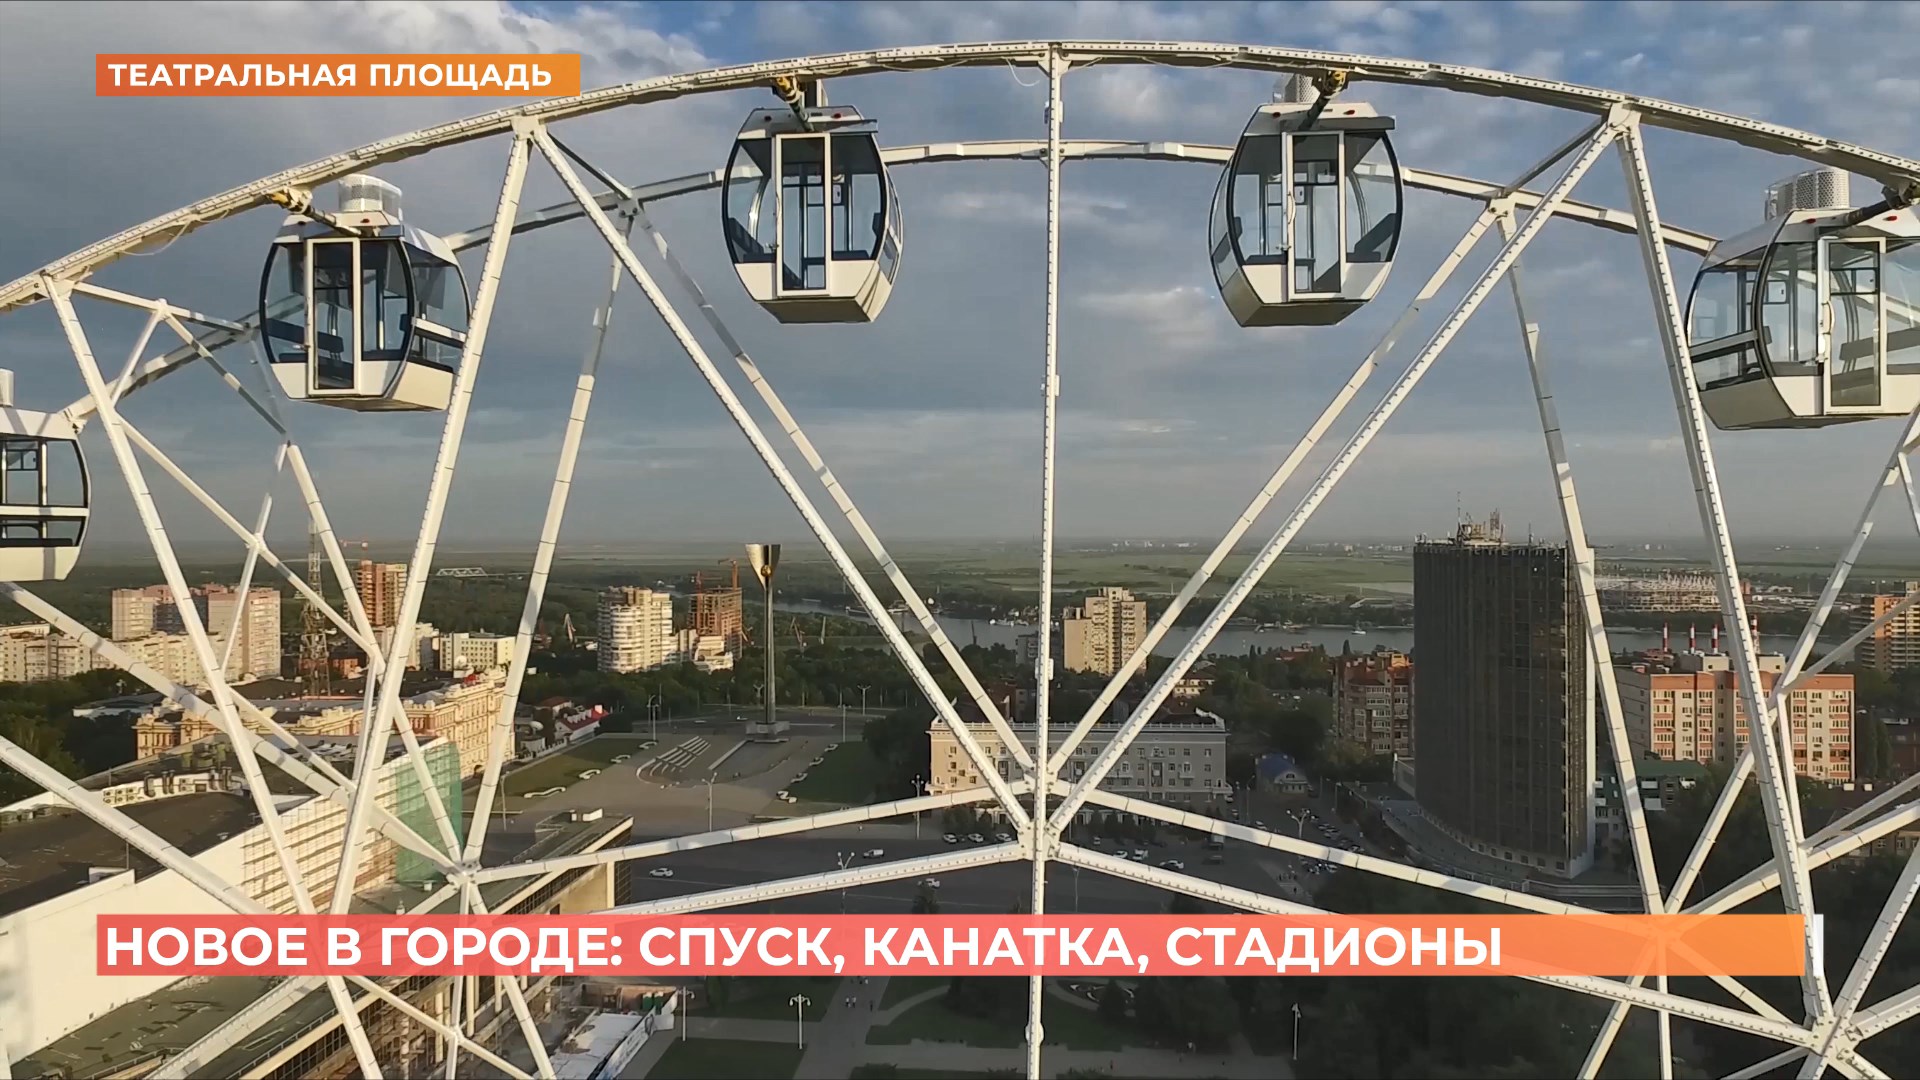 Спуск, канатка, стадионы: новые проекты о развитии Ростова сегодня утвердили городские власти